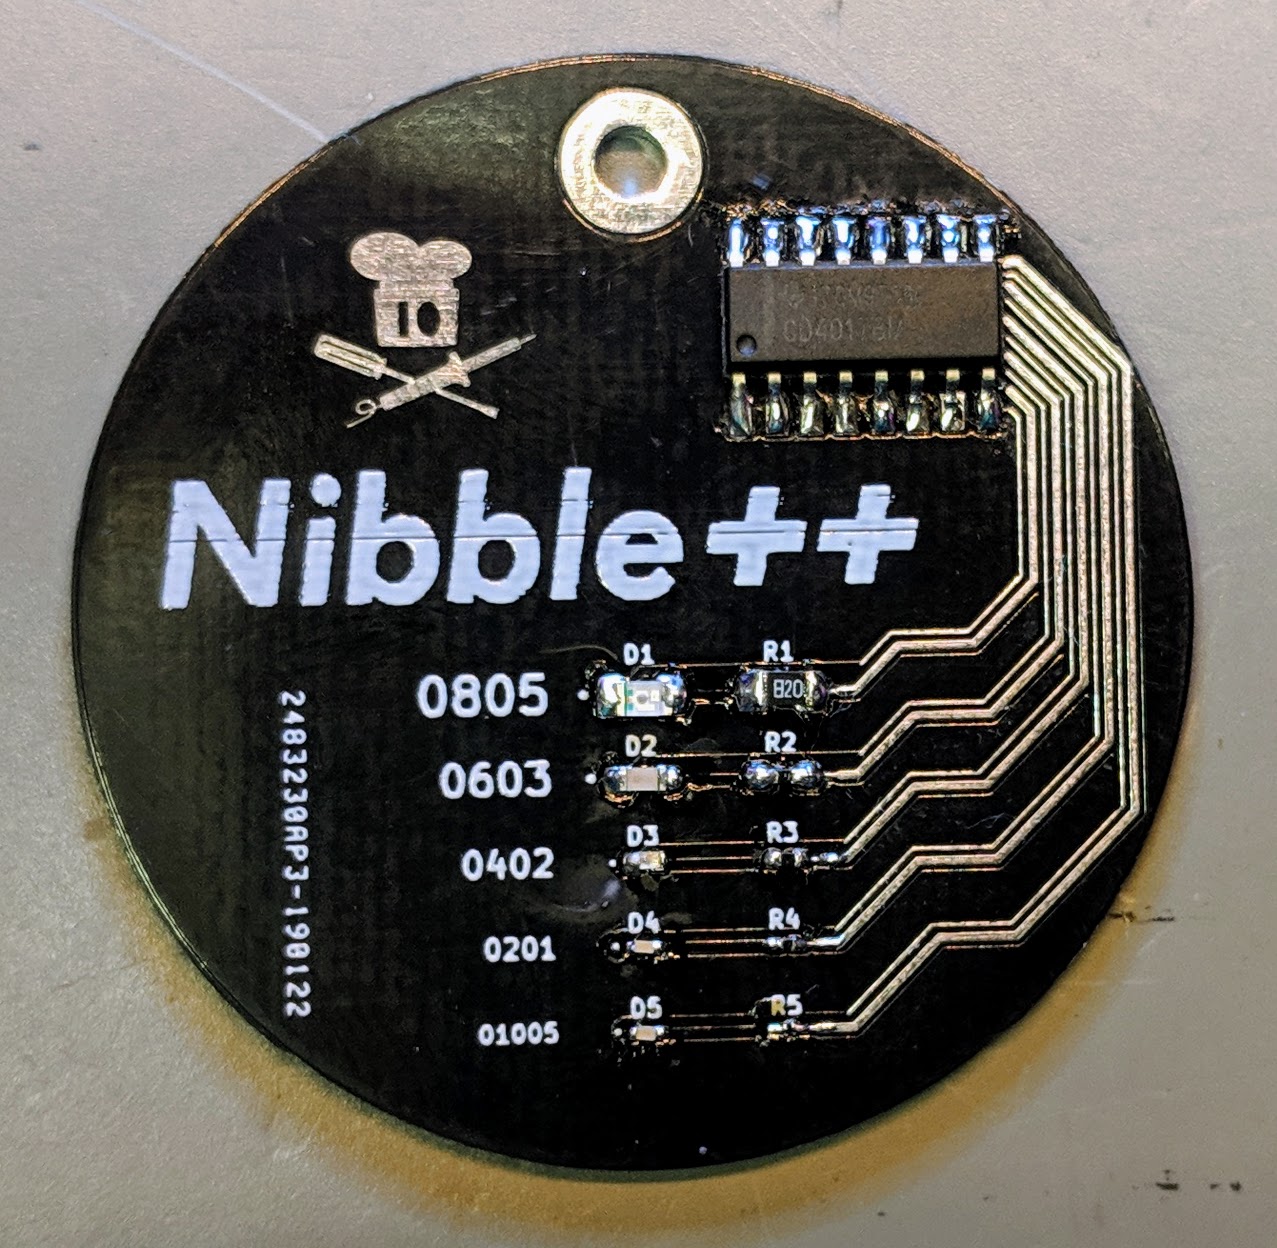 Nibble++ - Eine SMD Herausforderung für Erfahrene